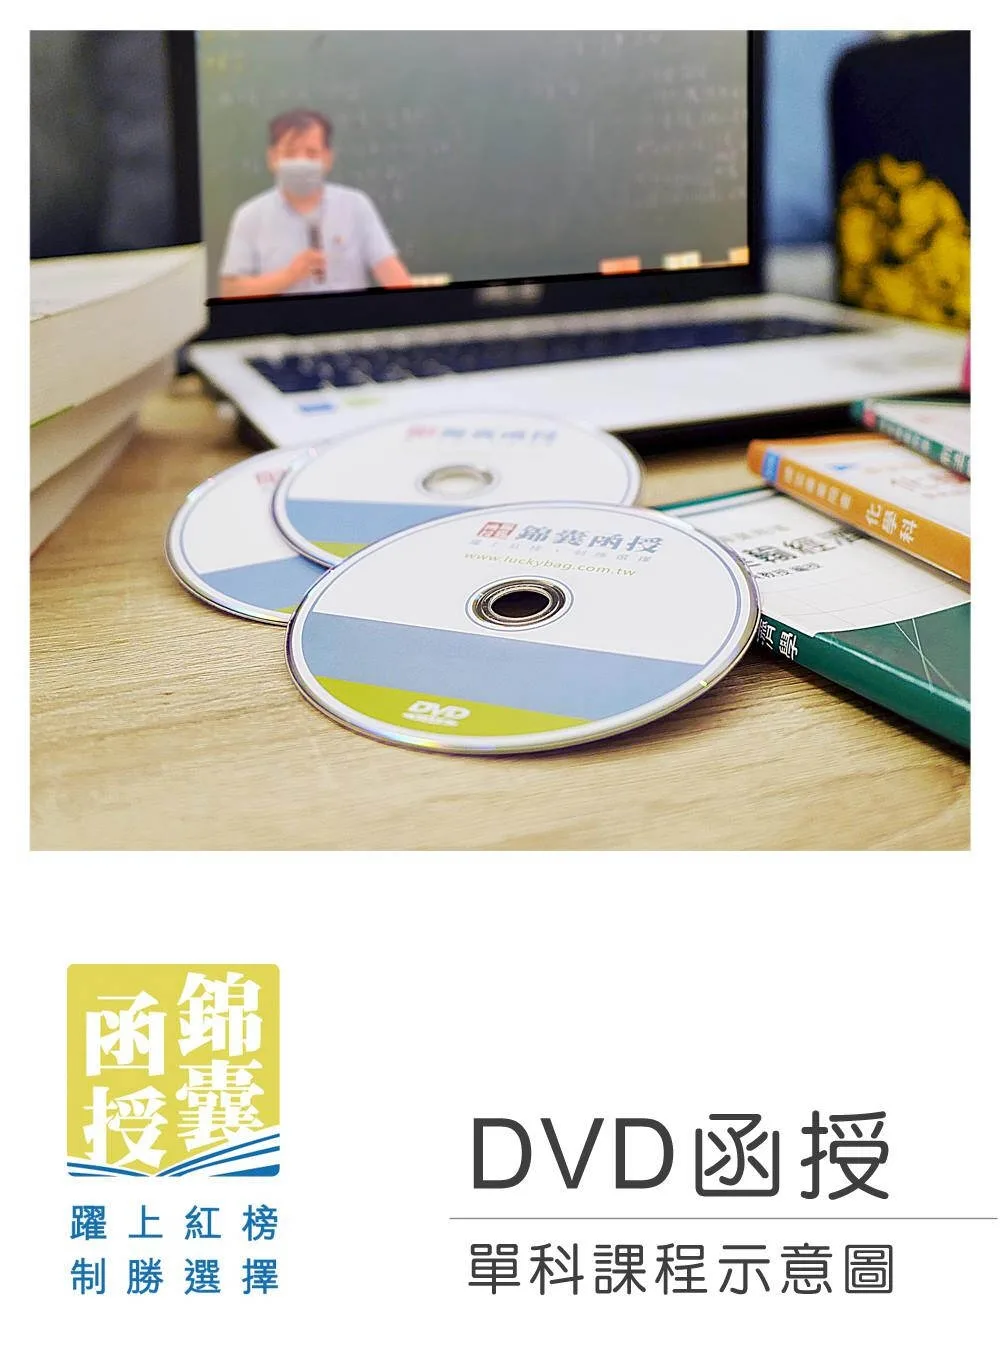 【DVD函授】農會法及其施行細則(正規班&進階班)-單科課程(111版)